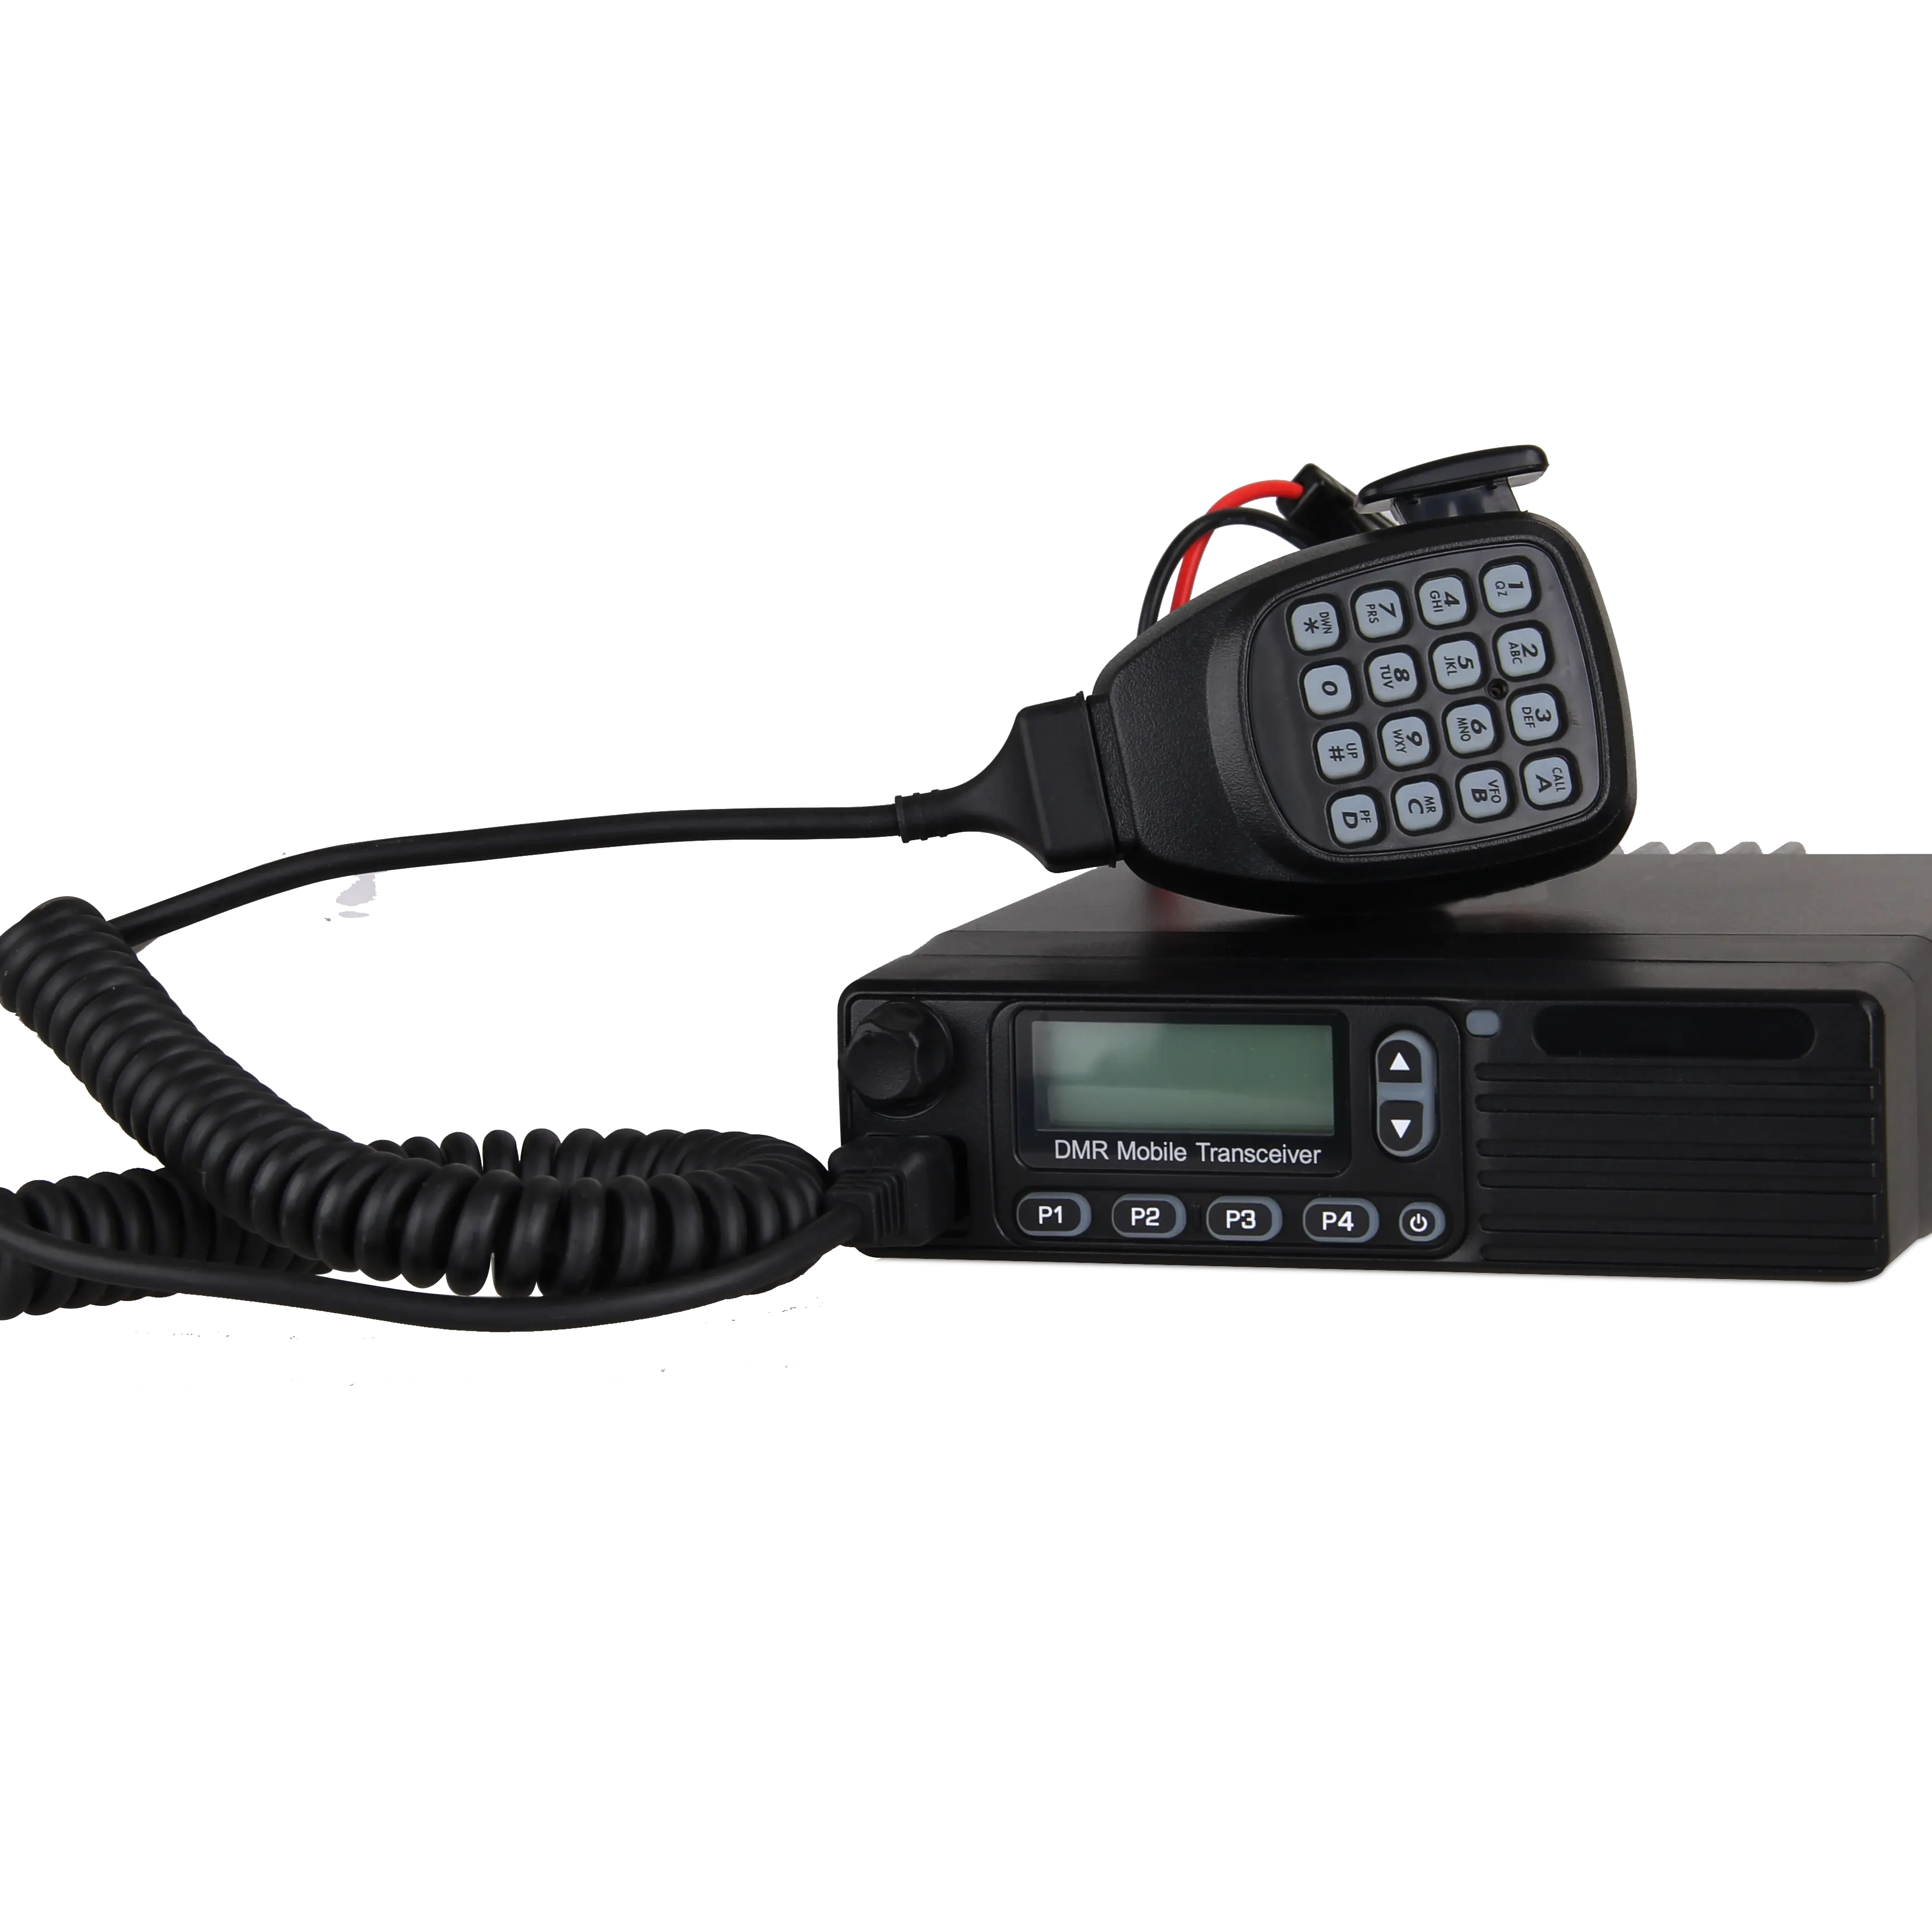 DMR цифровой мобильное радио антенна VHF/UHF KST DM-M8000 ham радио может работать с ретранслятор